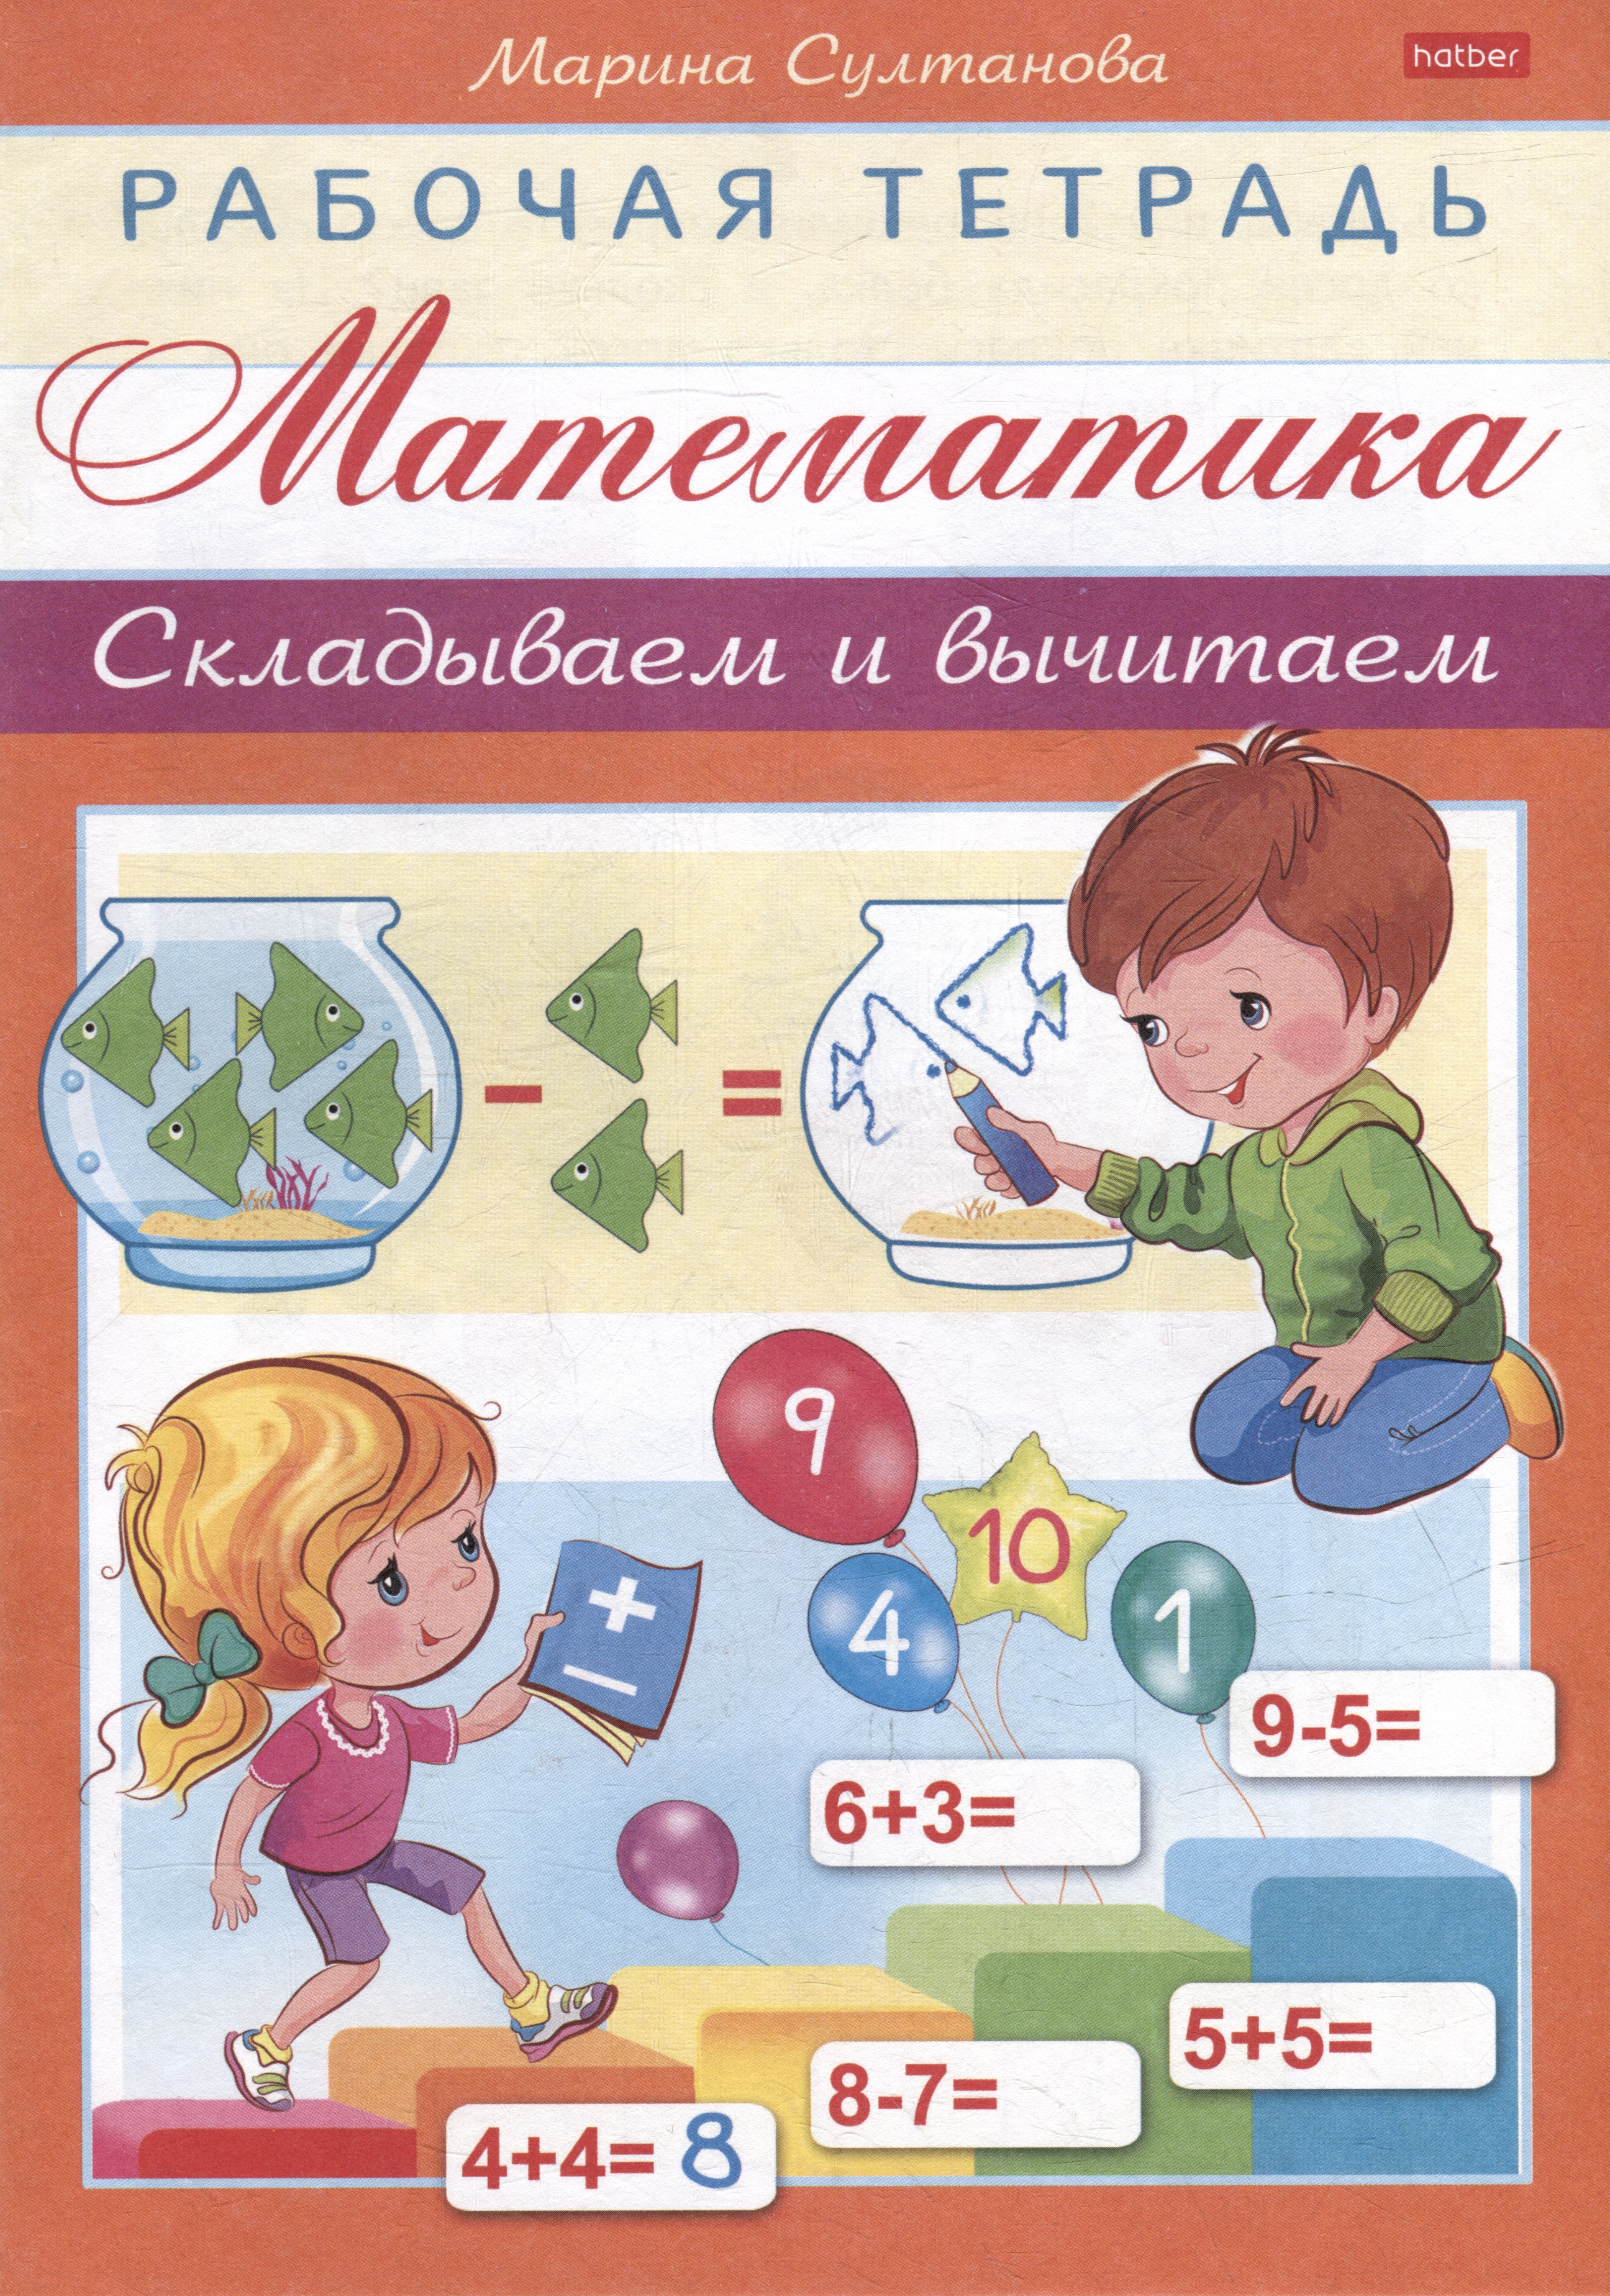 Султанова Марина Наумовна Рабочая тетрадь для дошкольников. Математика. Складываем и вычитаем